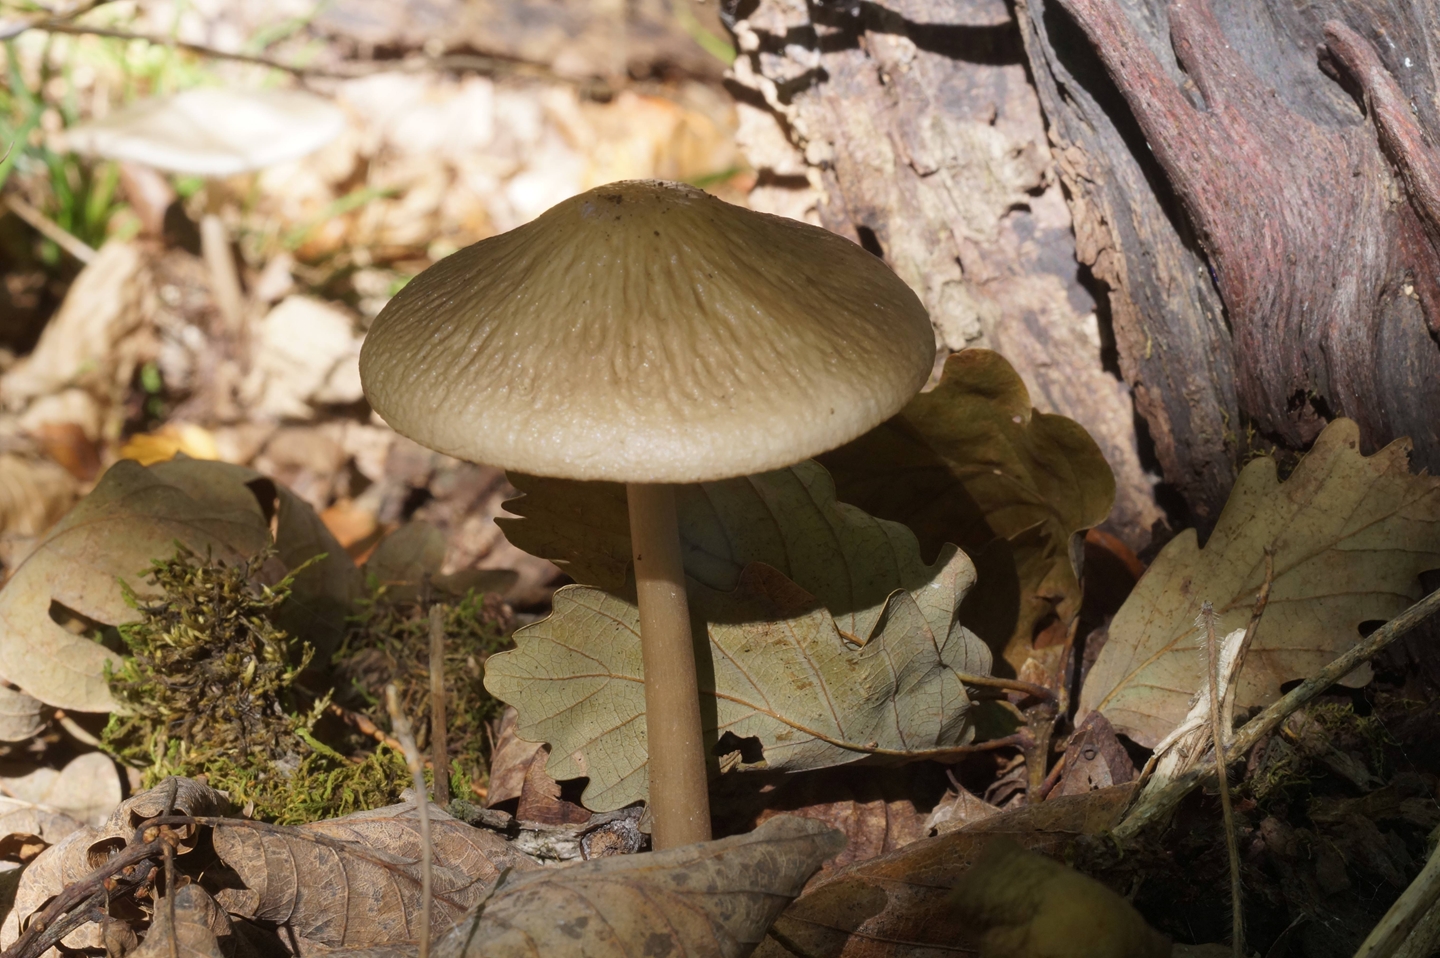 Съедобные грибы в Дагестане